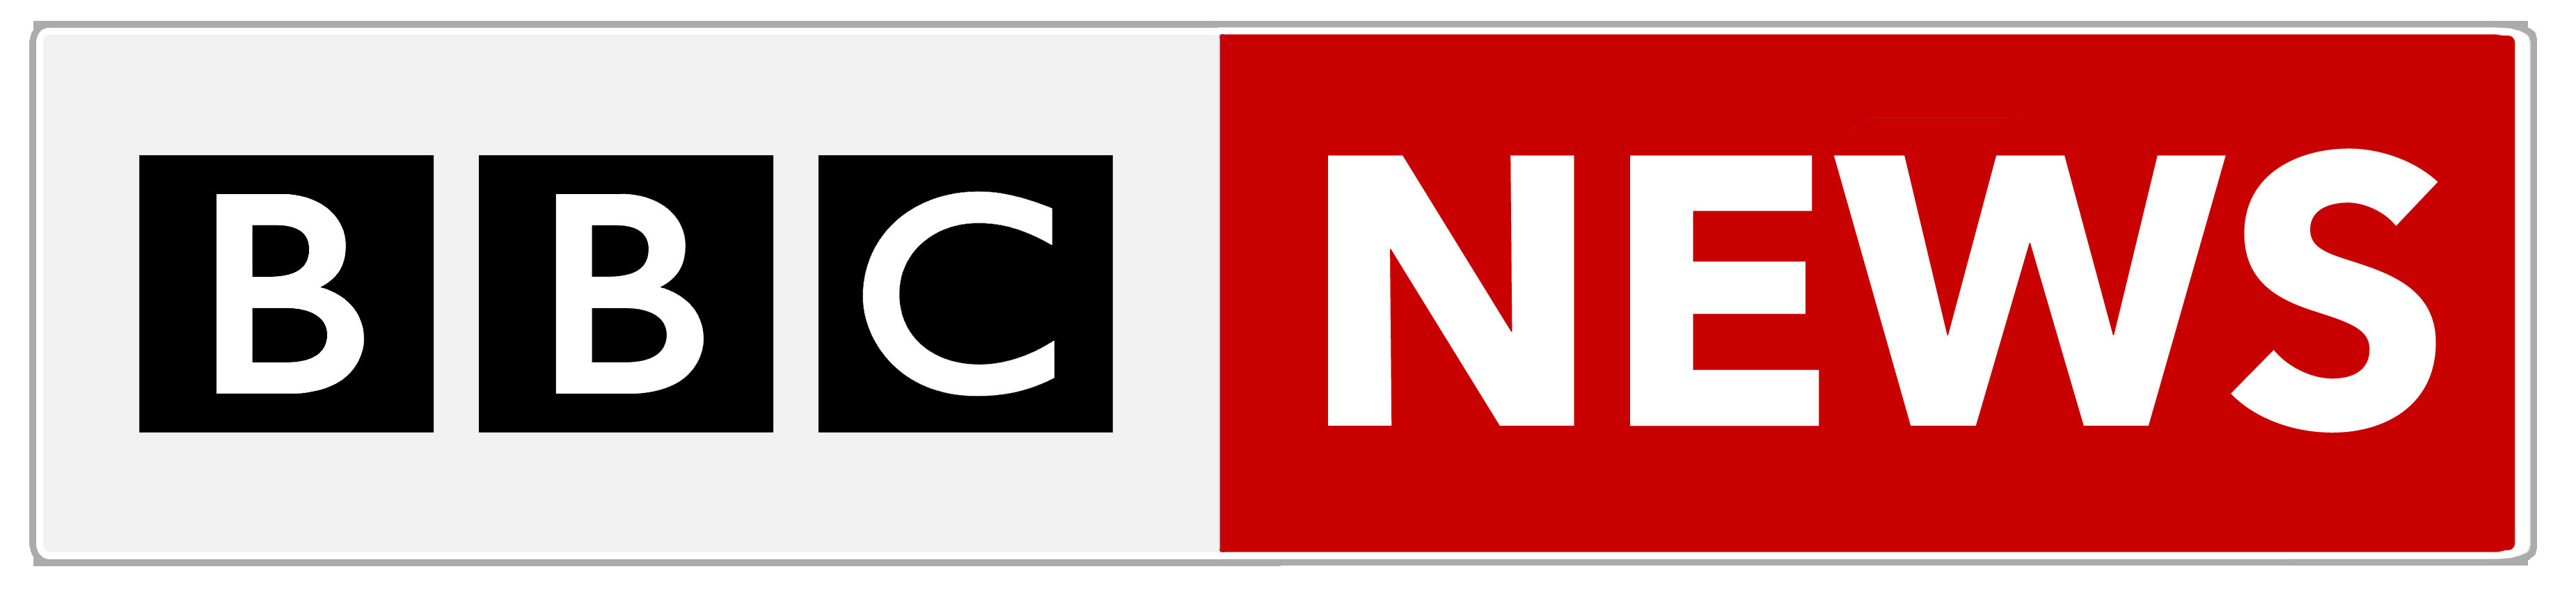 Merkezi İngiltere'de olan BBC News, 24 saat boyunca haber yayını yapan bir haber kanalıdır. 